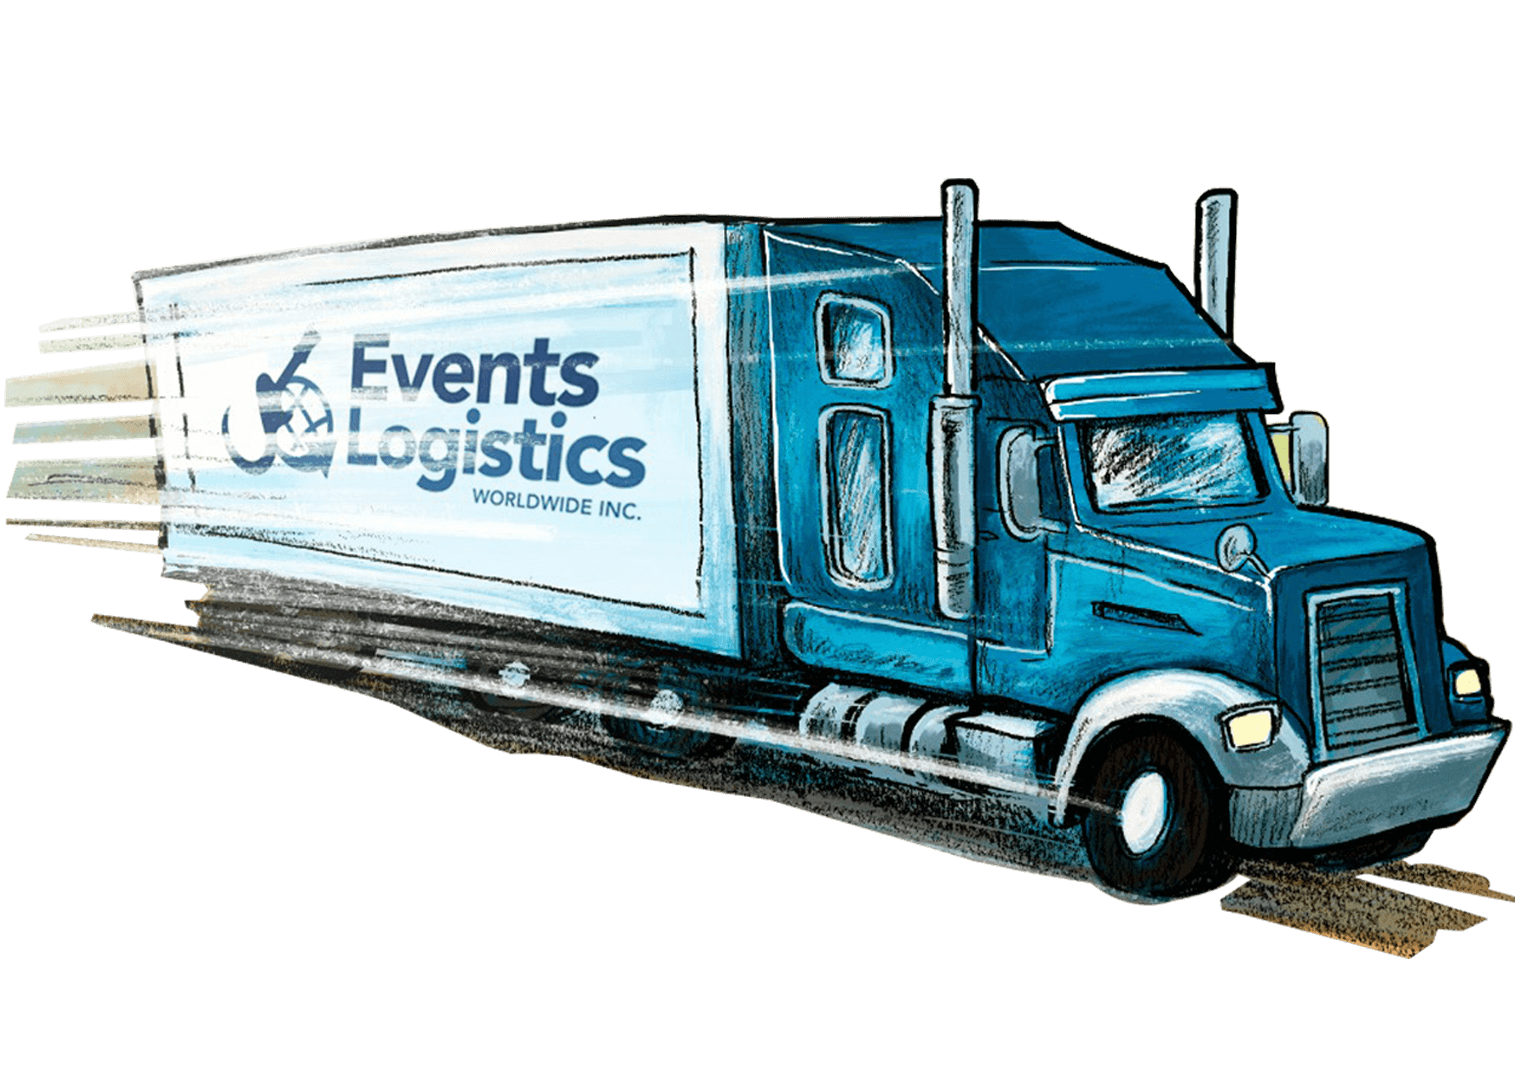 Events Logistics Worldwide Inc